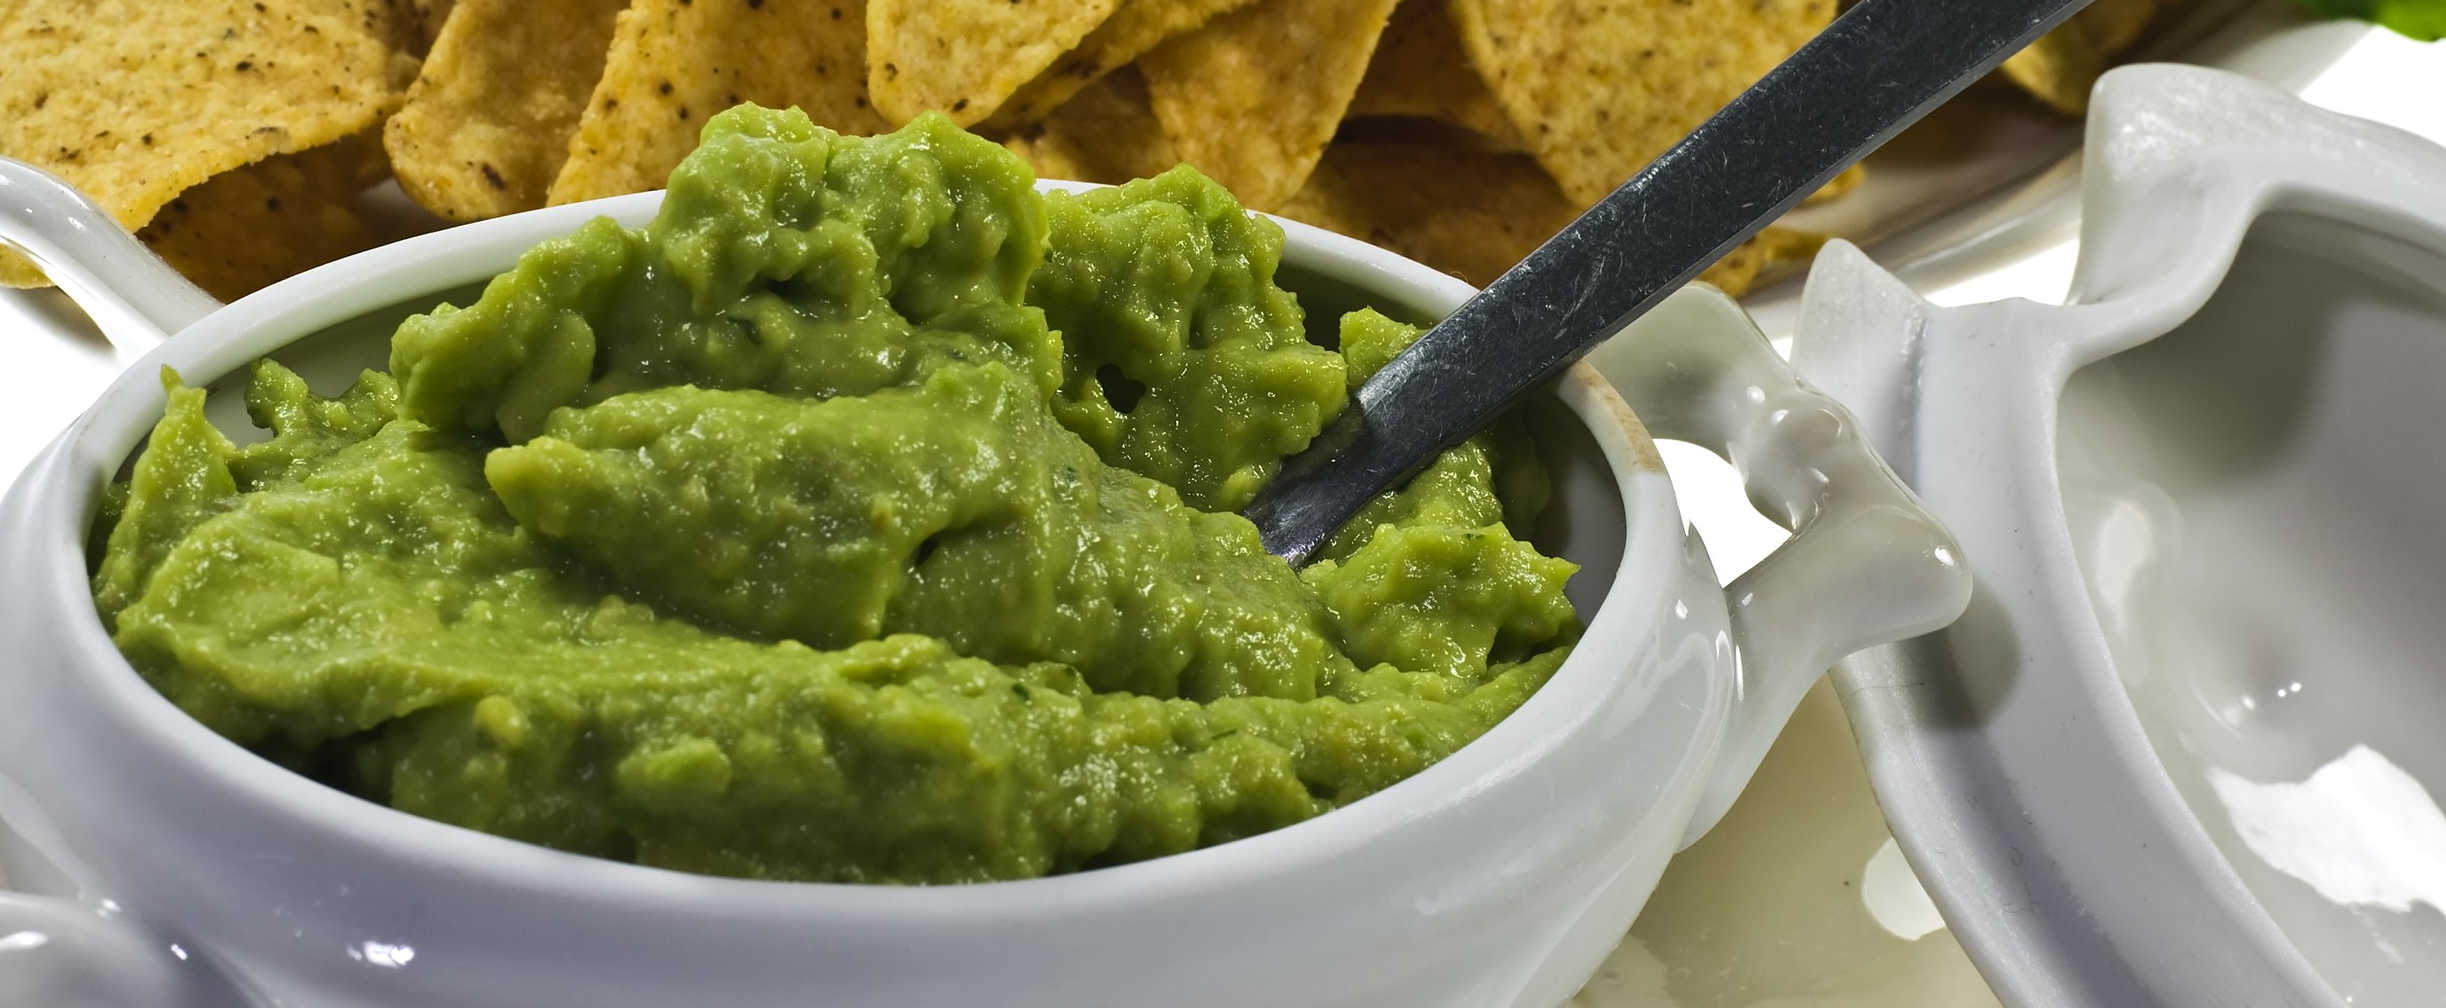 Guacamole - avocado-based dip originated in Mexico